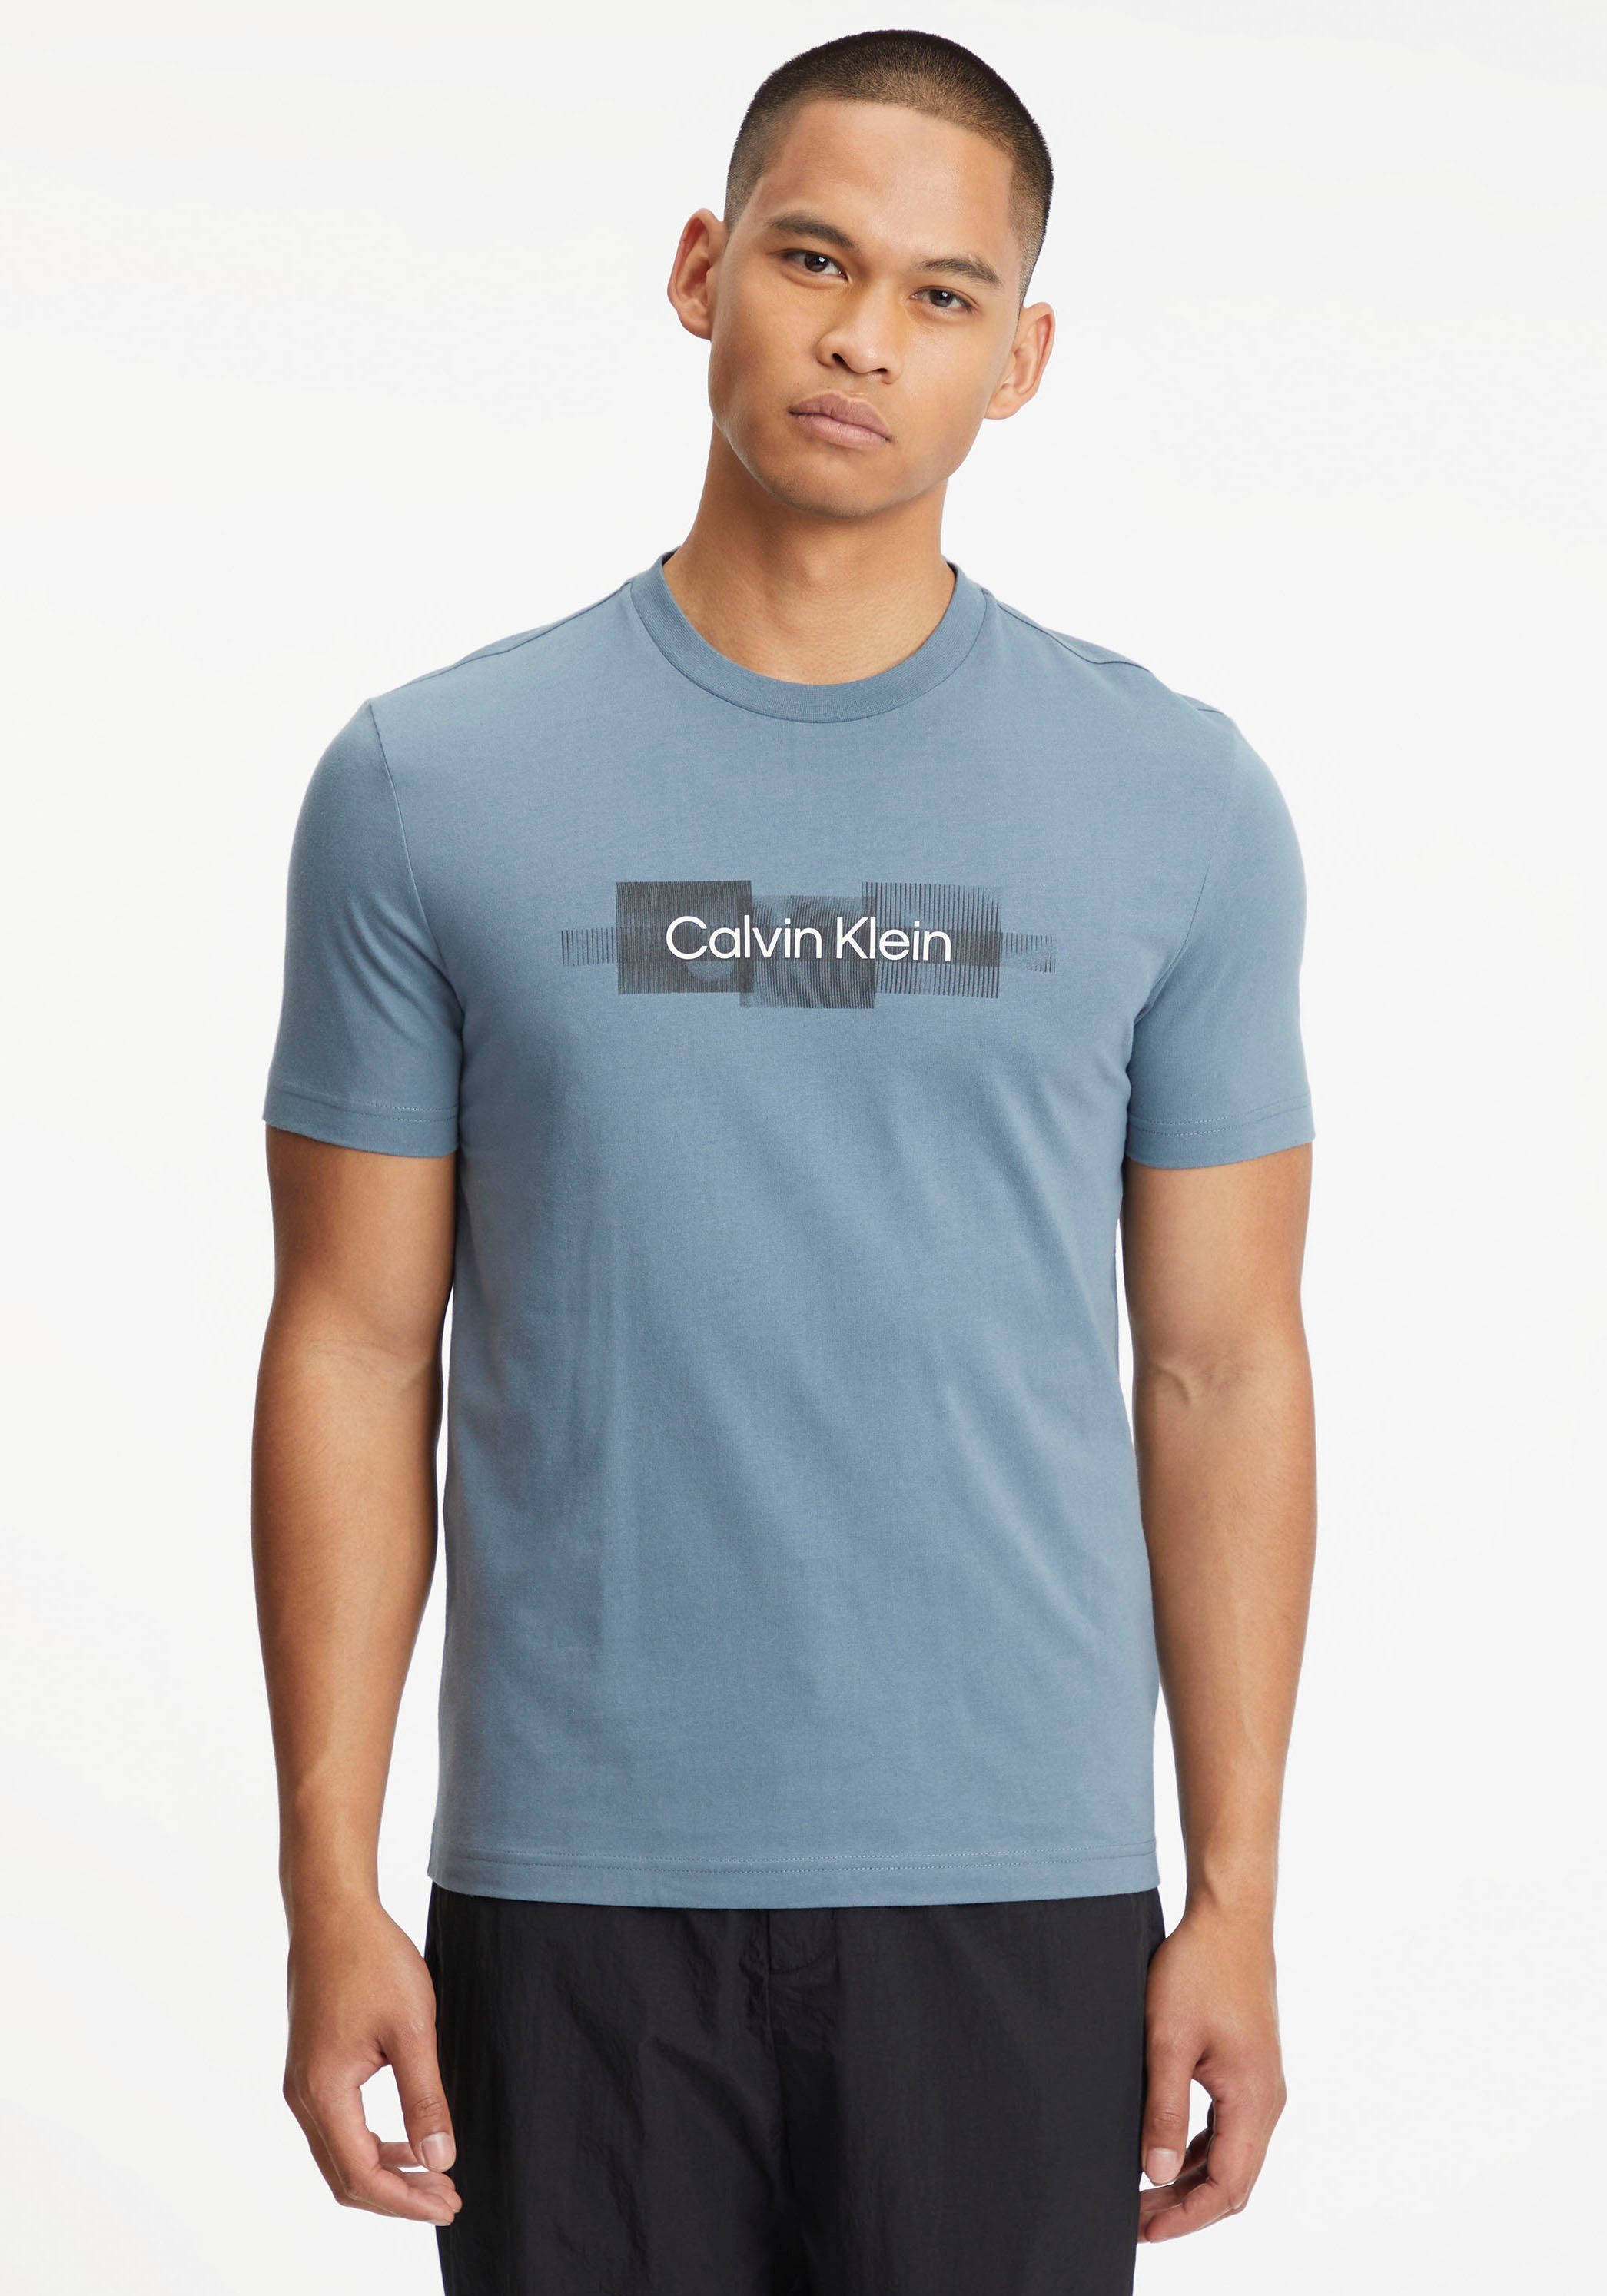 Calvin Klein T-Shirt BOX Baumwolle aus T-SHIRT reiner STRIPED LOGO Grey Tar